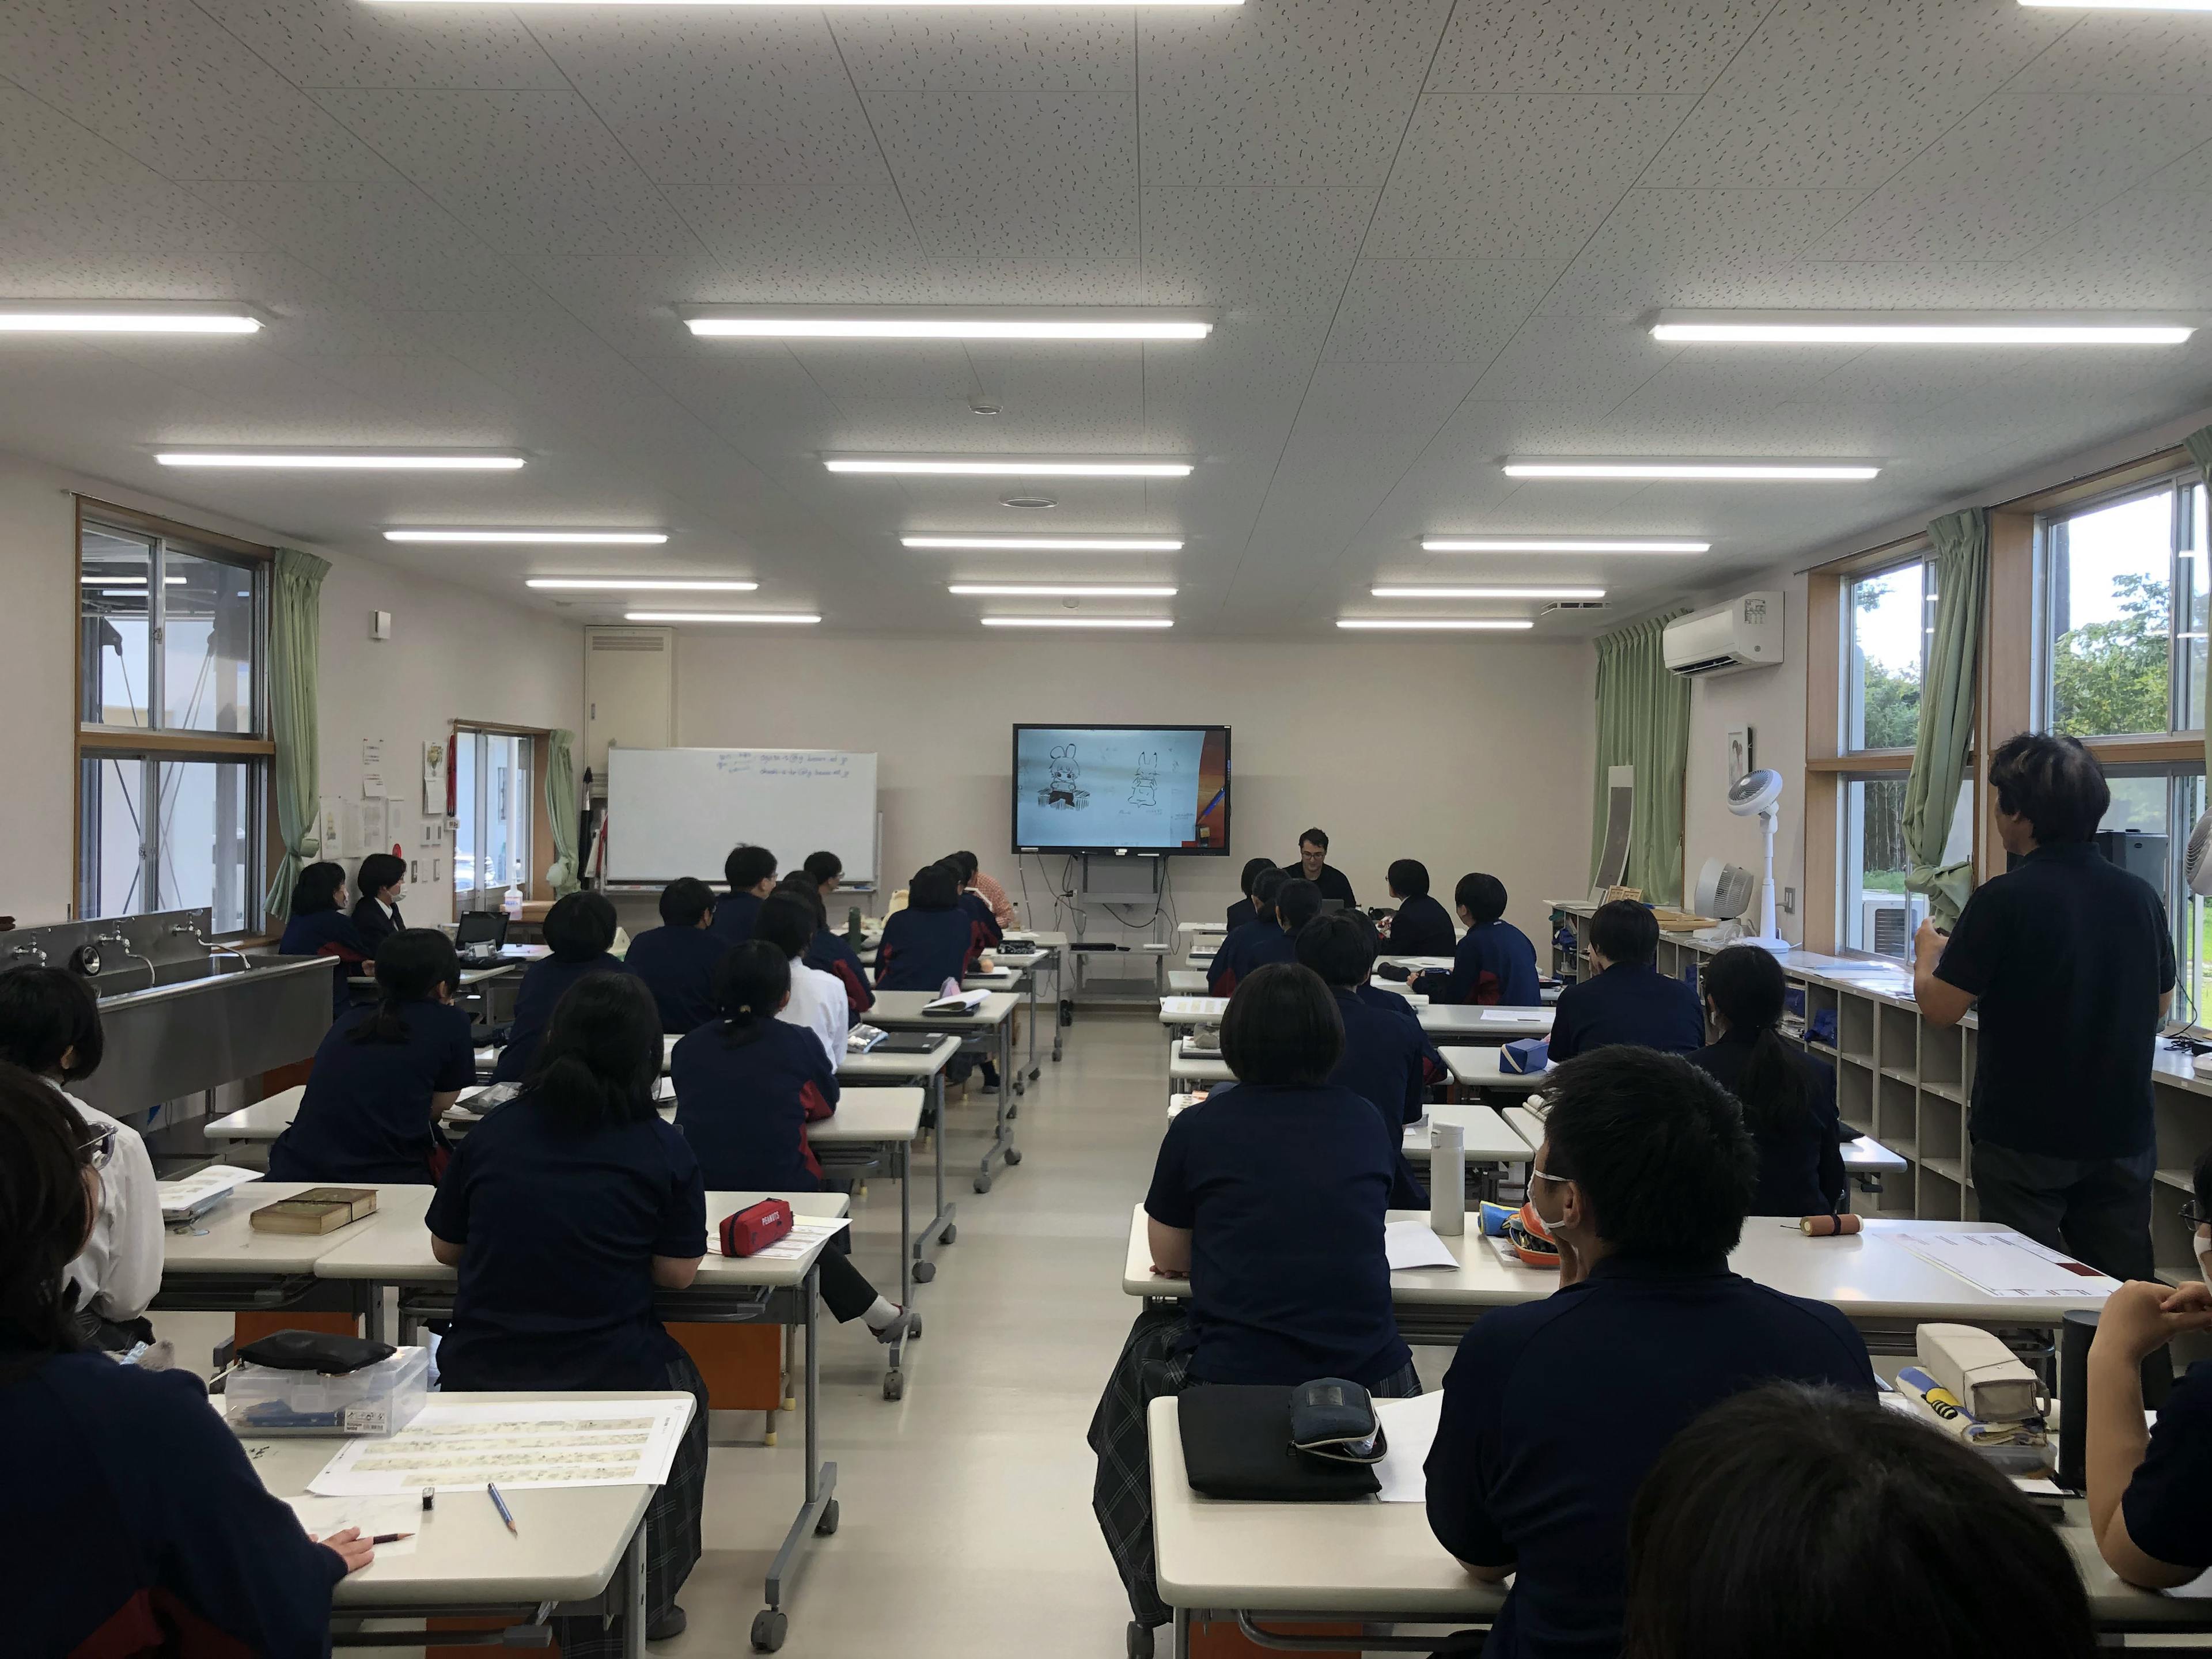 ताकामोरी हाई स्कूल के मंगा विभाग को निप्पॉन टेलीविजन के "100 मिलियन लोगों का बड़ा प्रश्न!? मुस्कुराएं और सहयोग करें!" पर पेश किया गया था।